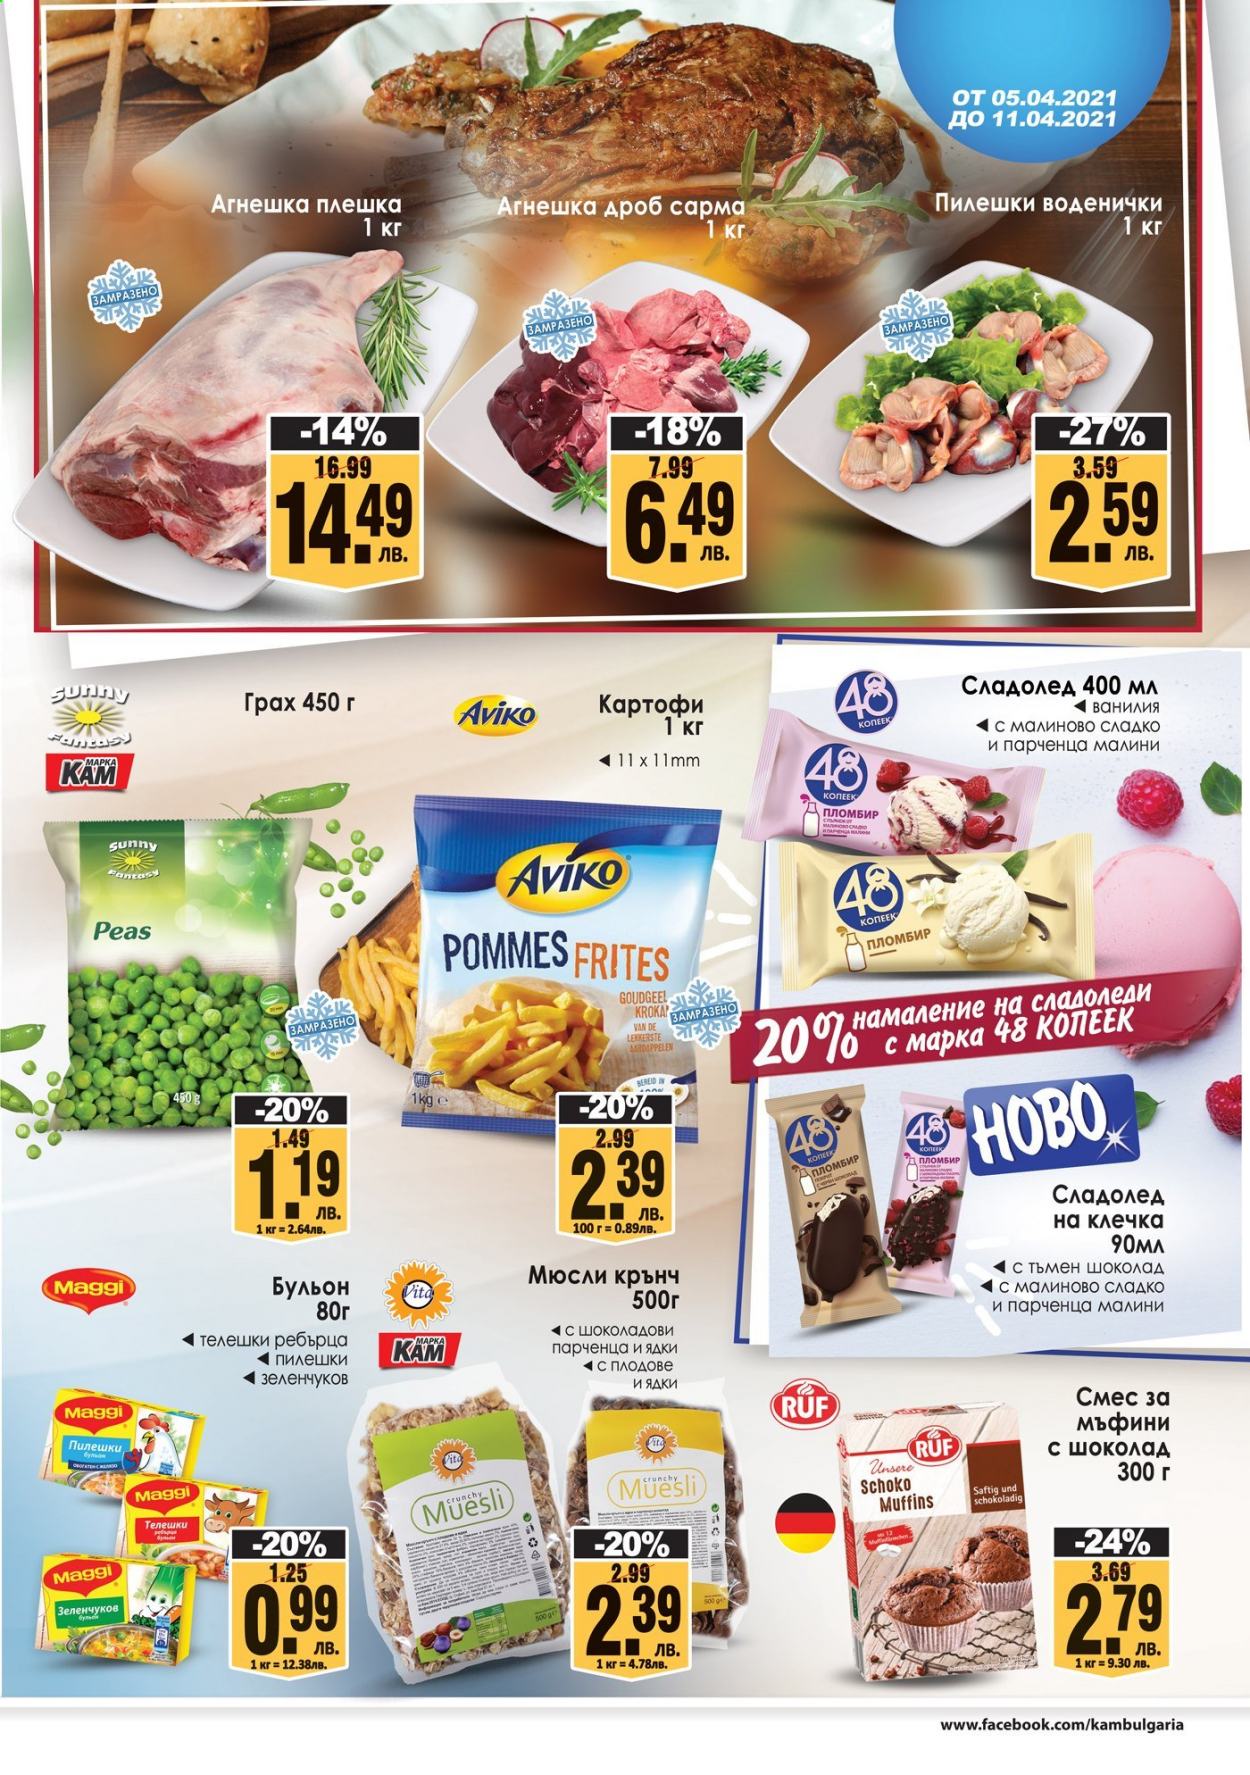 thumbnail - Брошура на КАМ Маркет - 05.04.2021 - 11.04.2021 - Продавани продукти - картофи, Maggi, сладолед, сладолед на клечка. Страница 3.